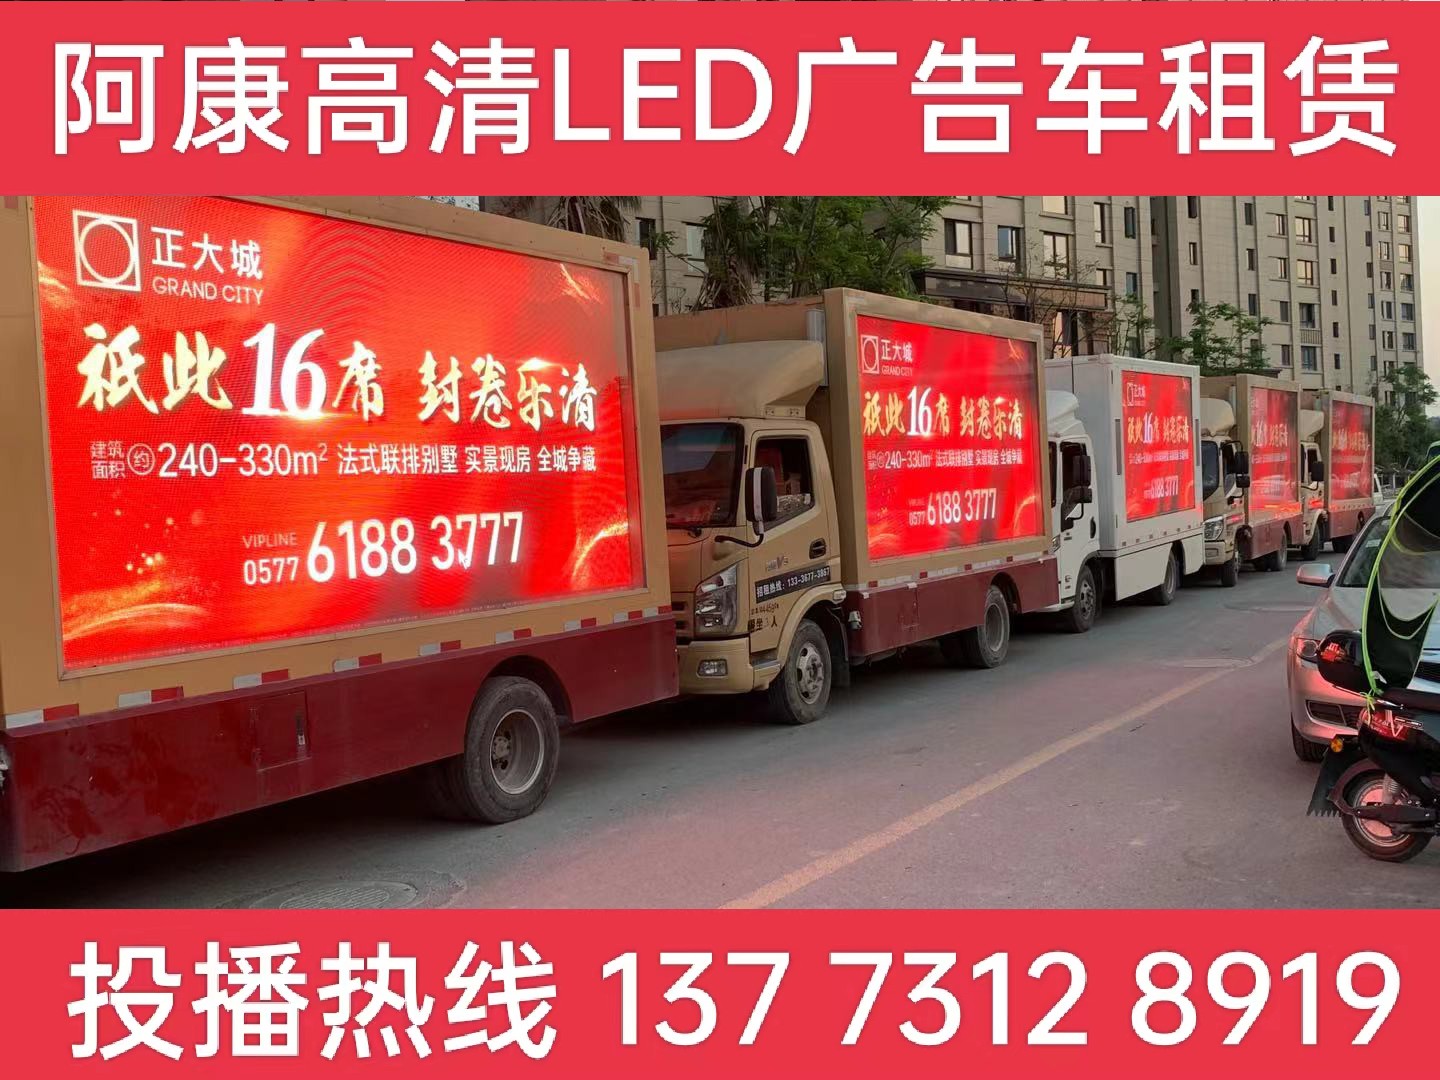 秦淮区LED广告车出租